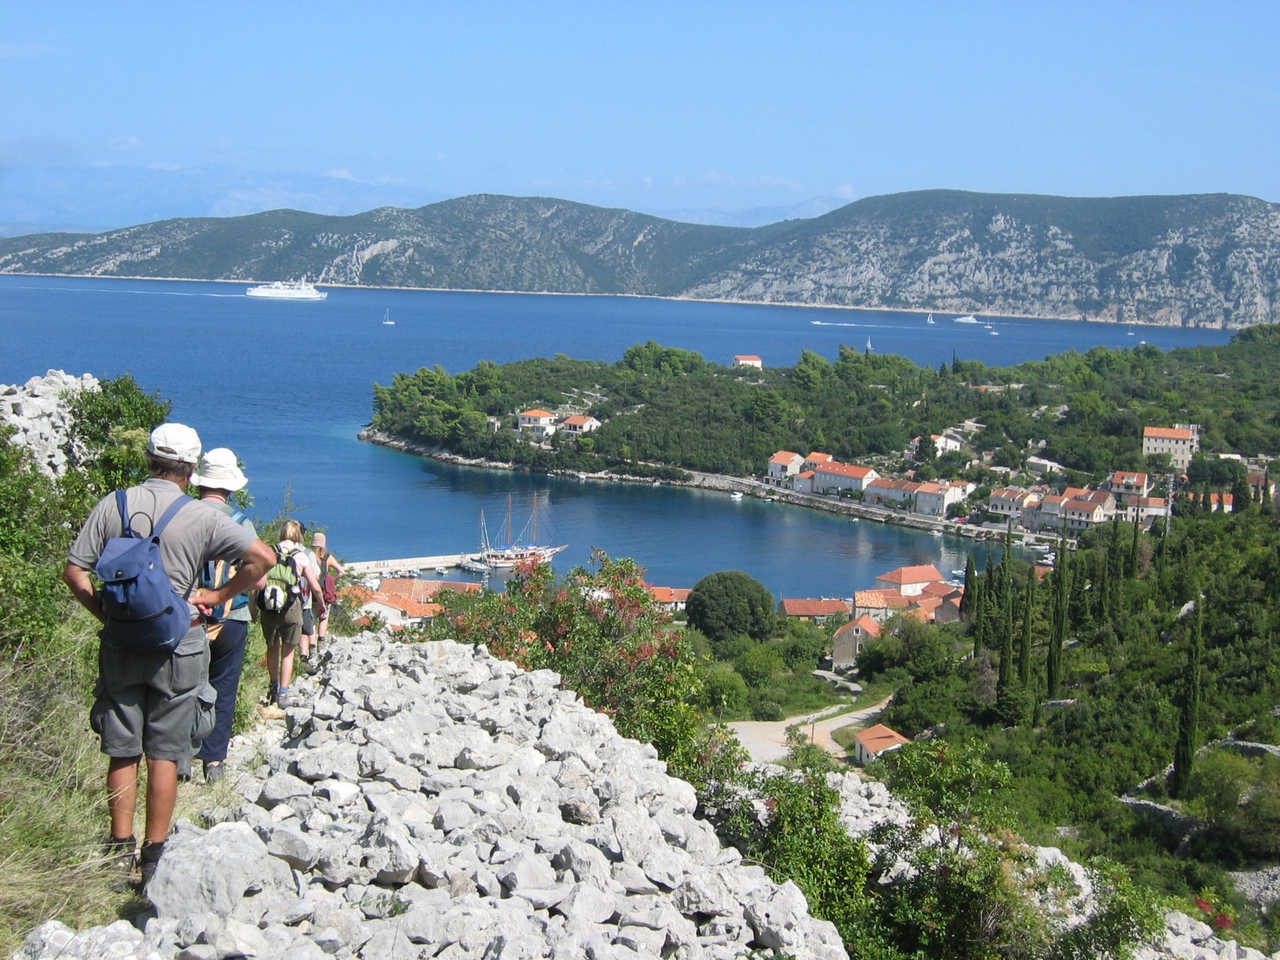 Randonneurs sur l'île de Brac, Croatie